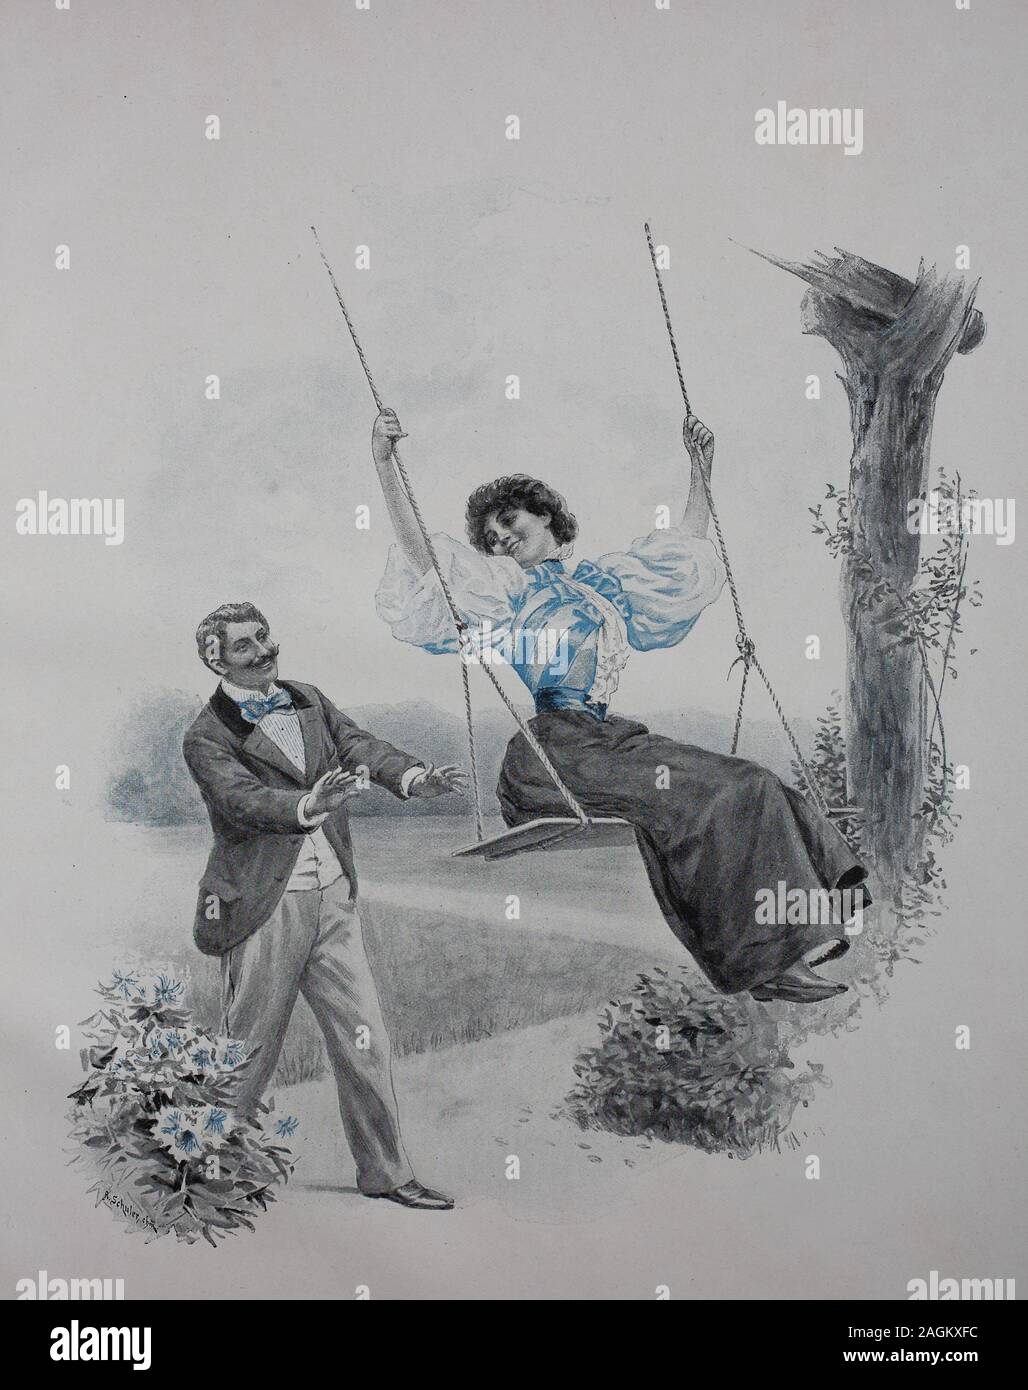 Couple playing with the swing, original print from the year 1899, Paar, das mit der Schaukel spielt, Reproduktion einer Originalvorlage aus dem 19. Jahrhundert, digital verbessert Stock Photo